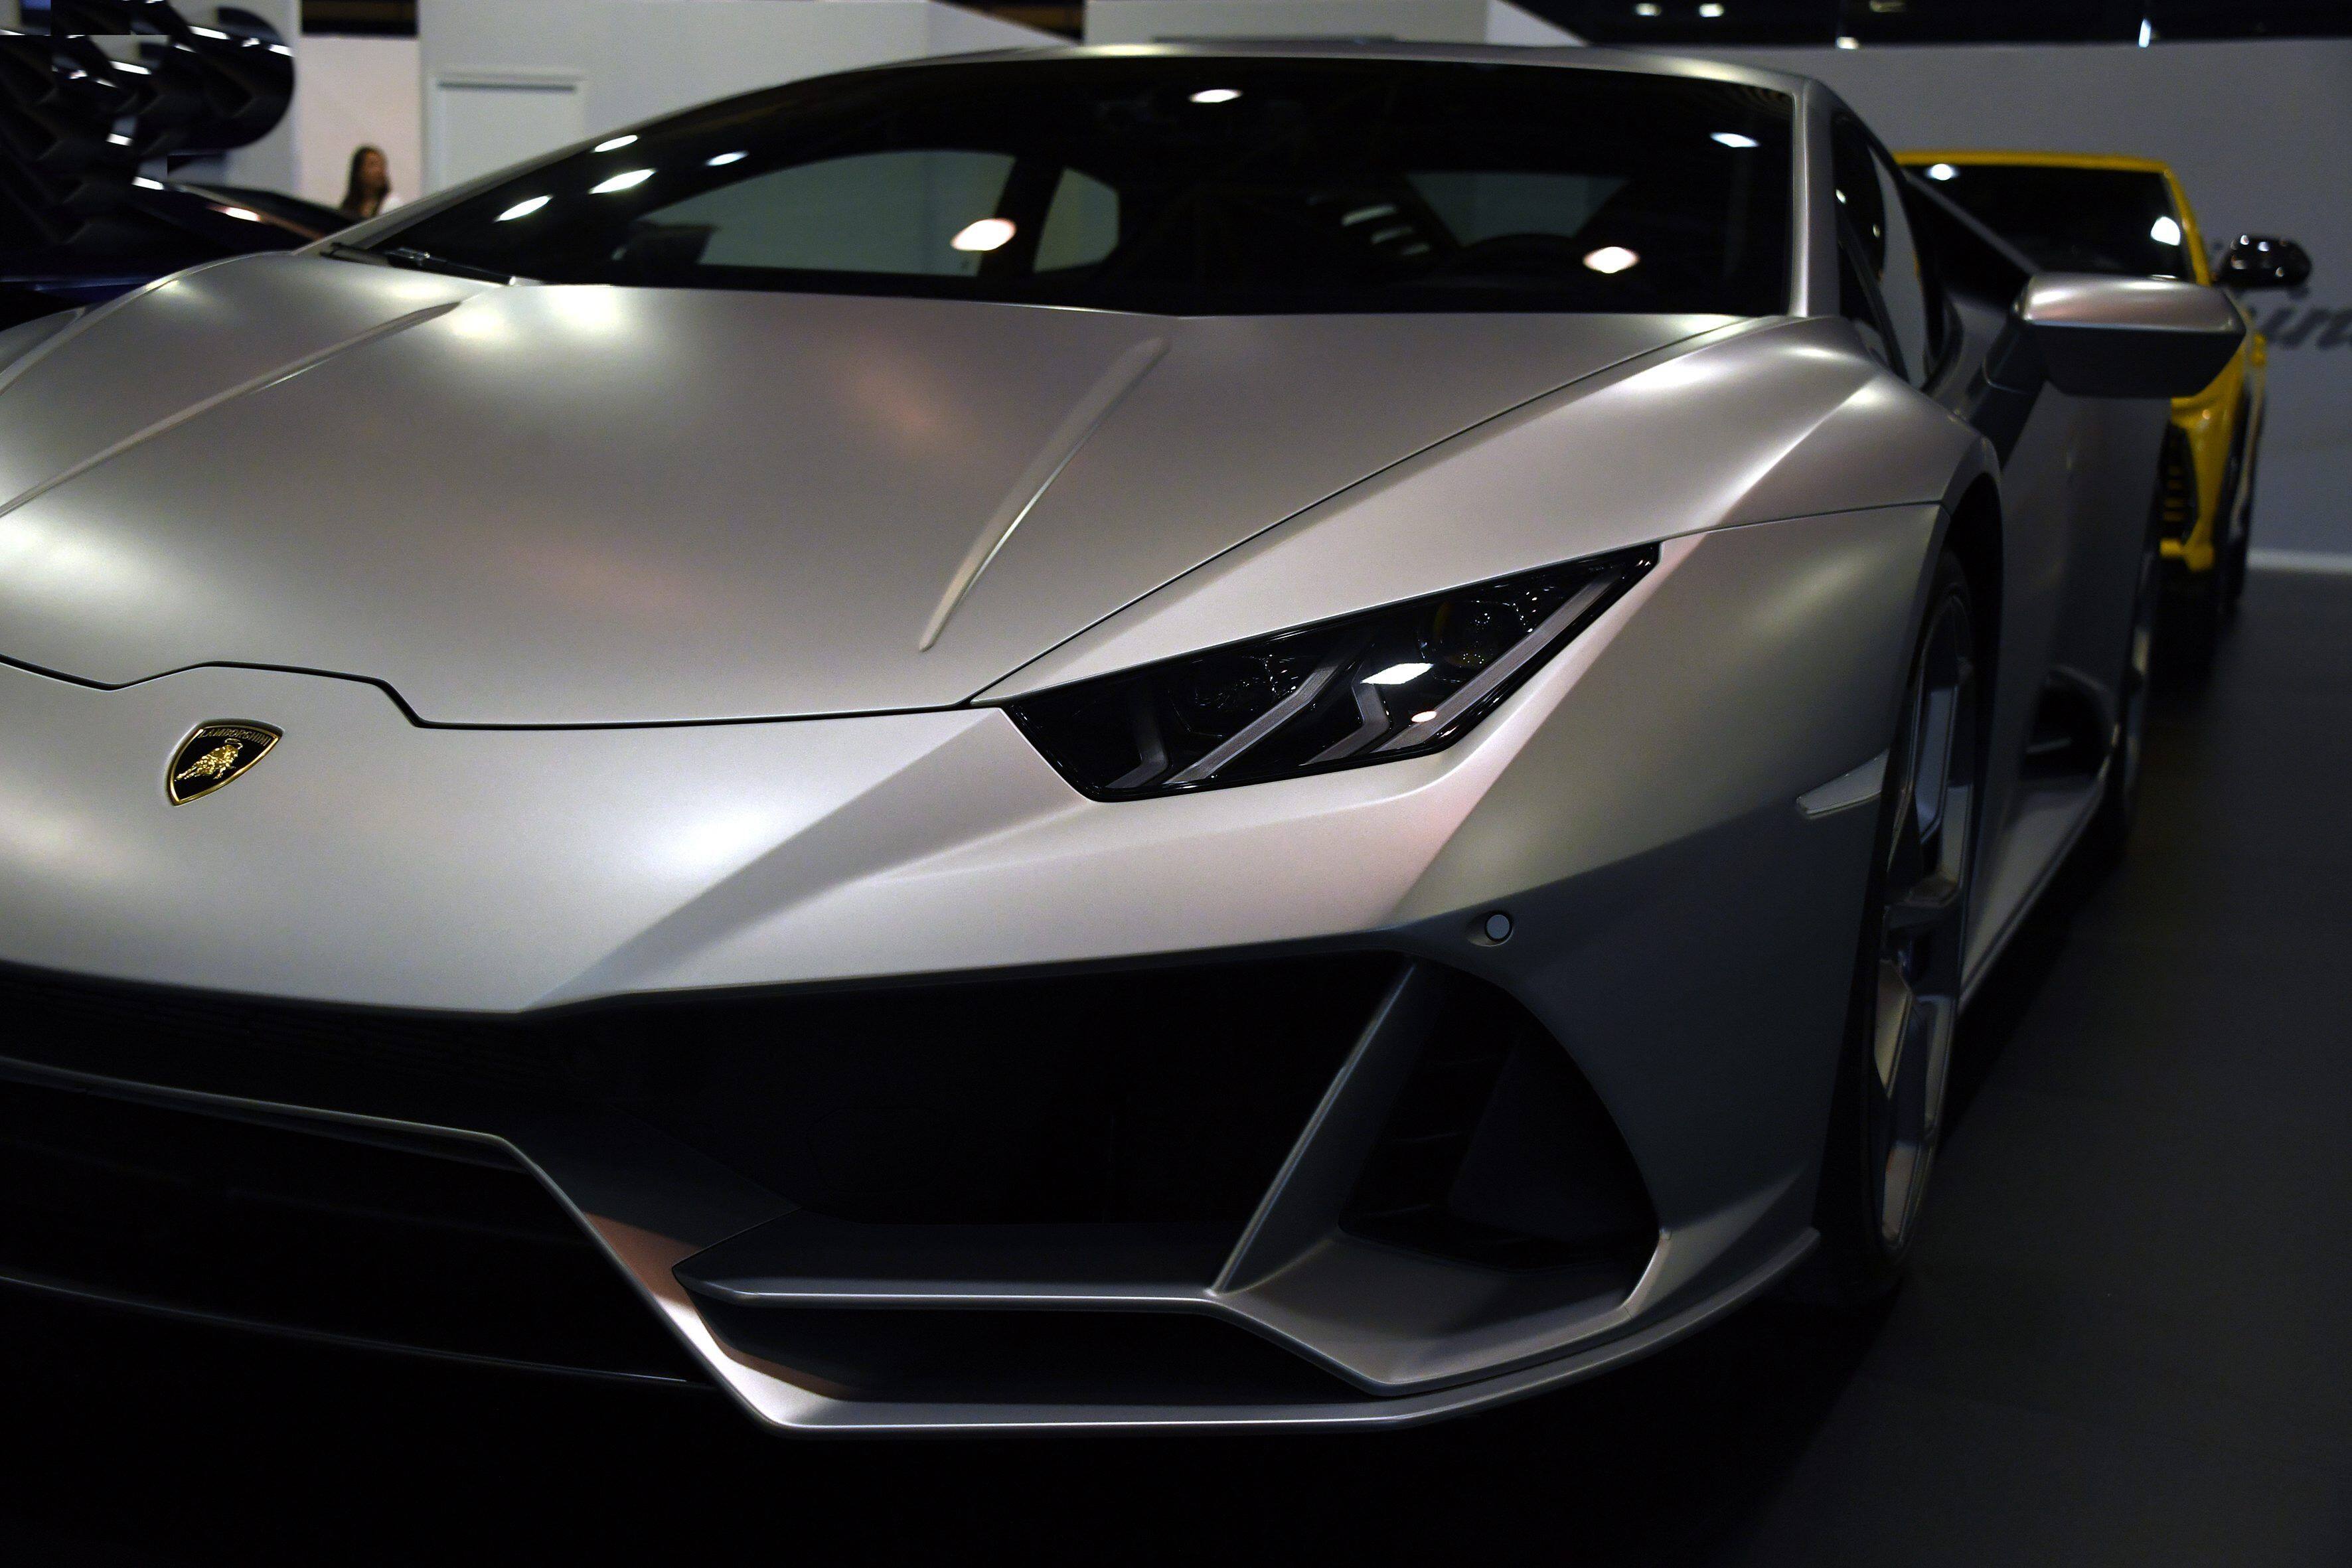 Voitures électriques : Lamborghini se lance dans la course en investissant  2 milliards d'euros 